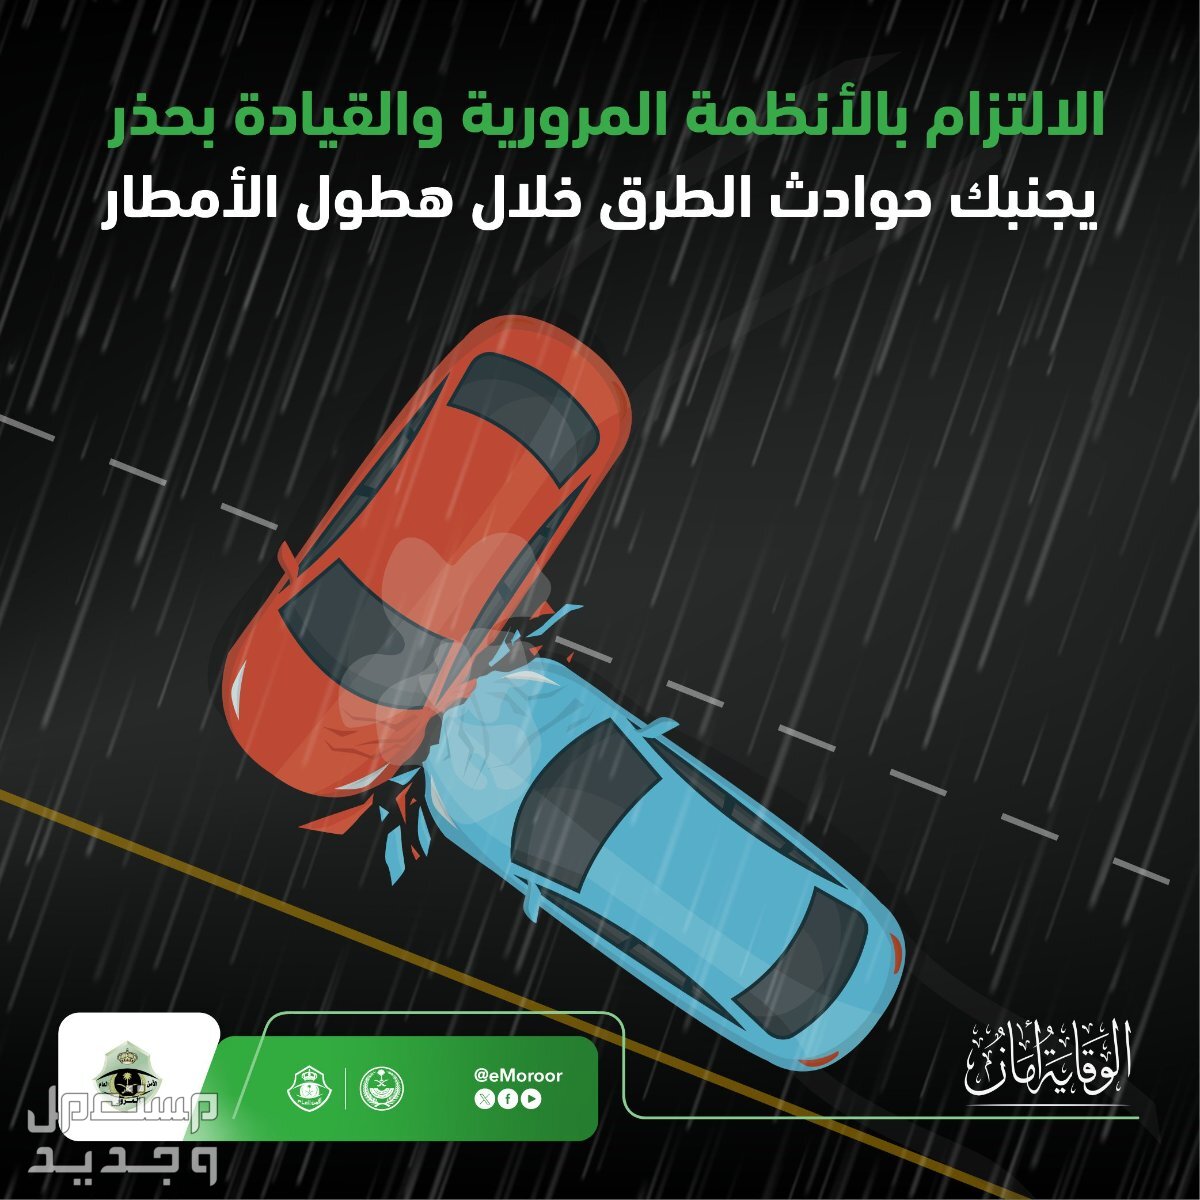 "المرور" يوضح قيمة مخالفة القيادة على الأرصفة والمسارات في السودان القيادة أثناء المطر